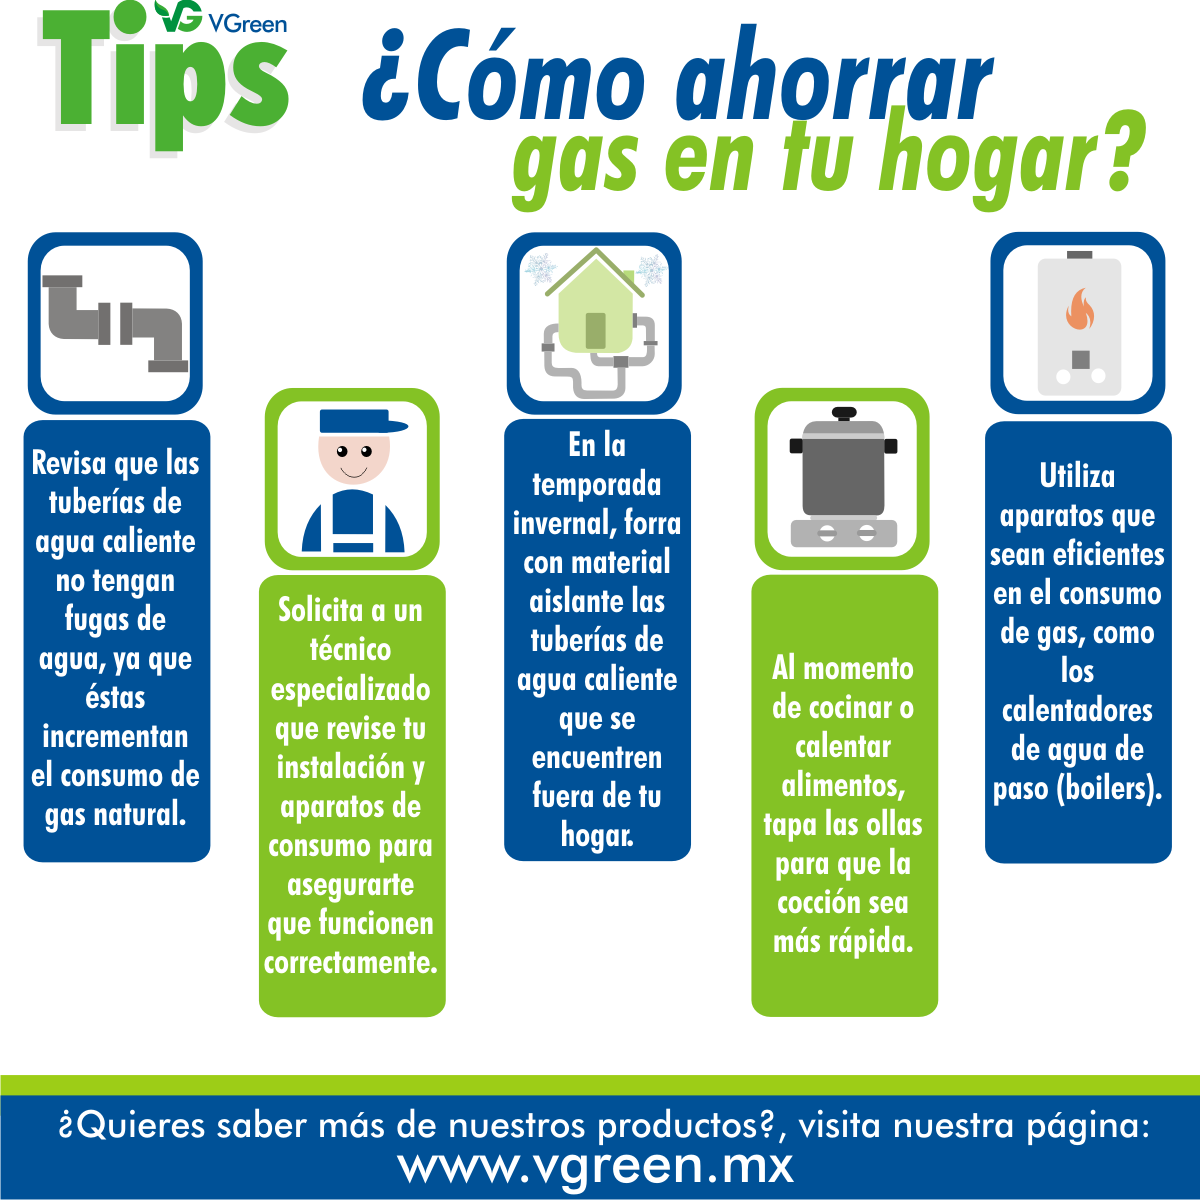 10 consejos prácticos para ahorrar gas en tu hogar y proteger el medio ambiente